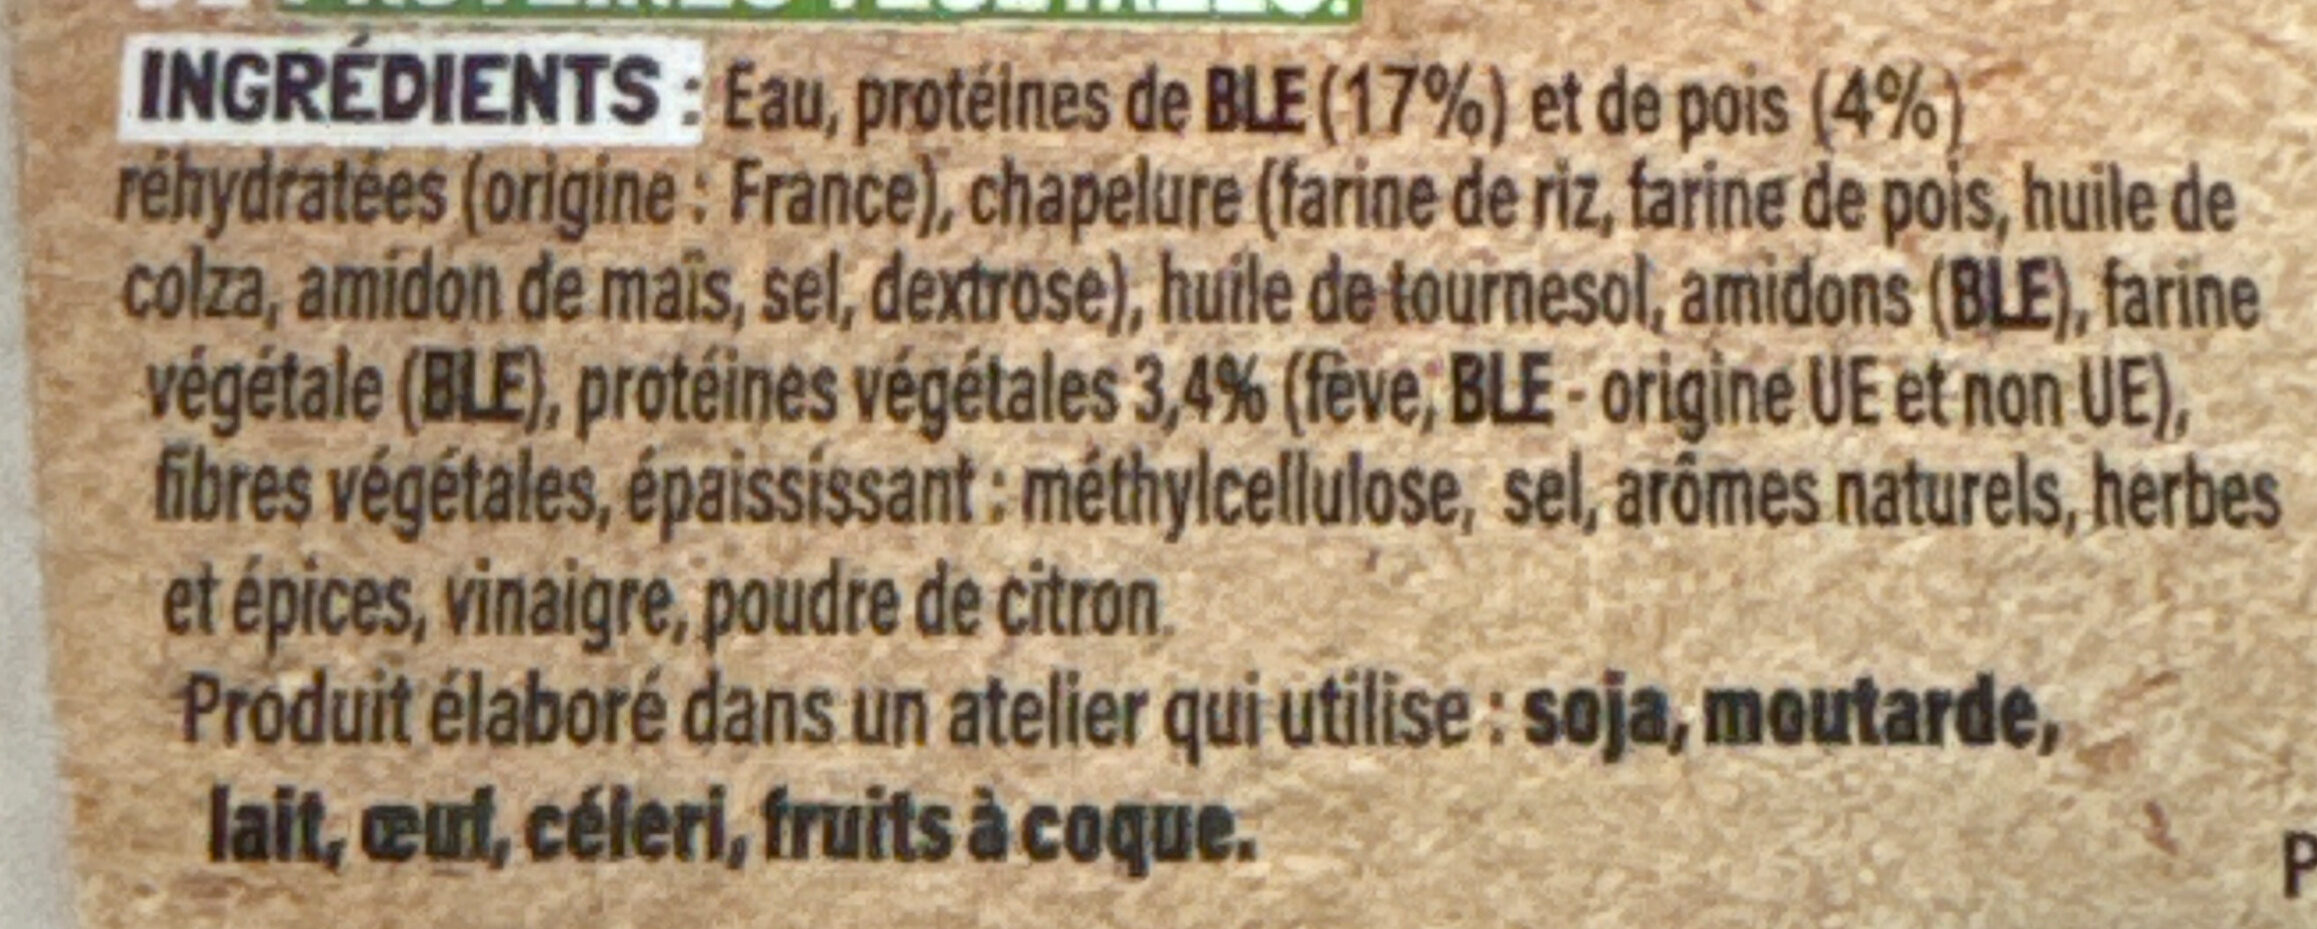 Nuggets 100% végétal - Ingredients - fr